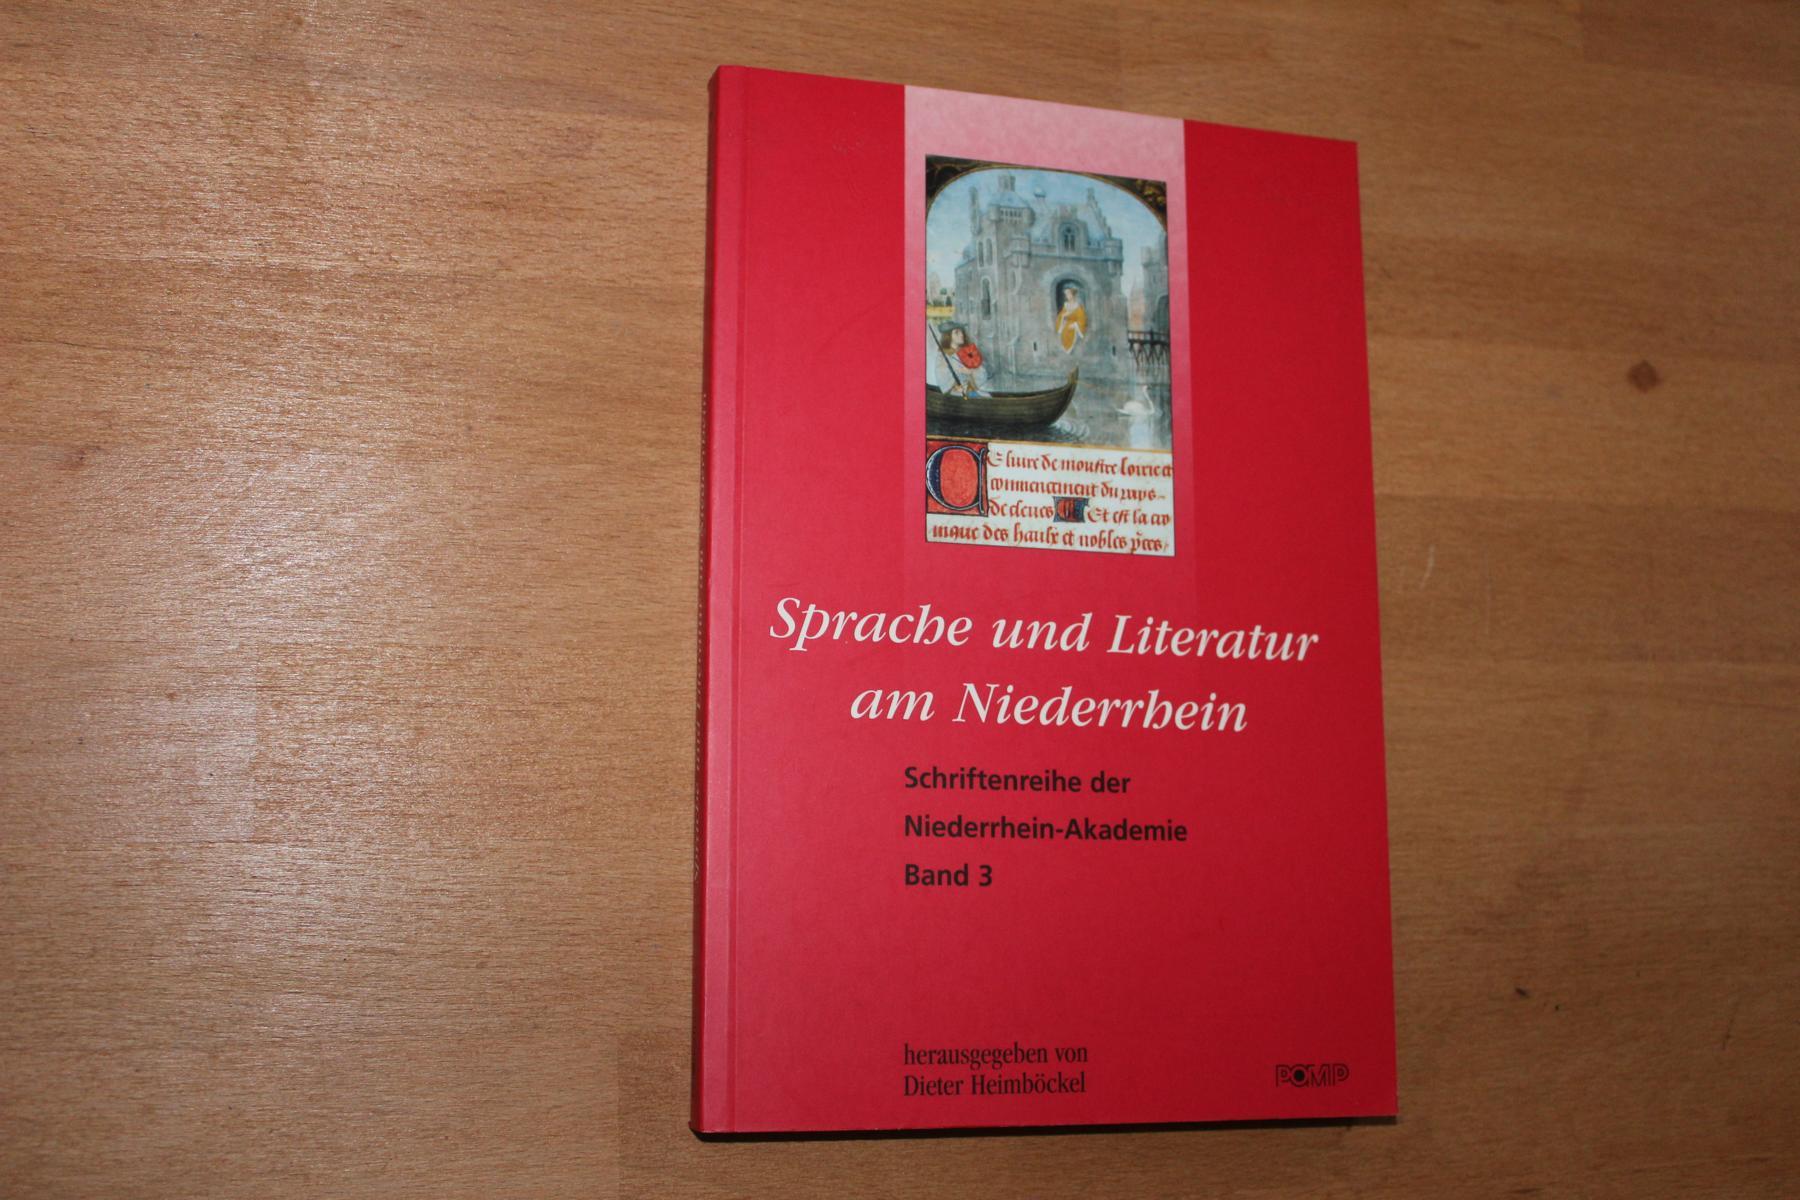 Sprache und Literatur am Niederrhein. Schriftenreihe der Niederrhein – Akademie herausgegeben von Dieter Geuenich - Band 3. - Heimbüchel, Dieter (Hrsg.)